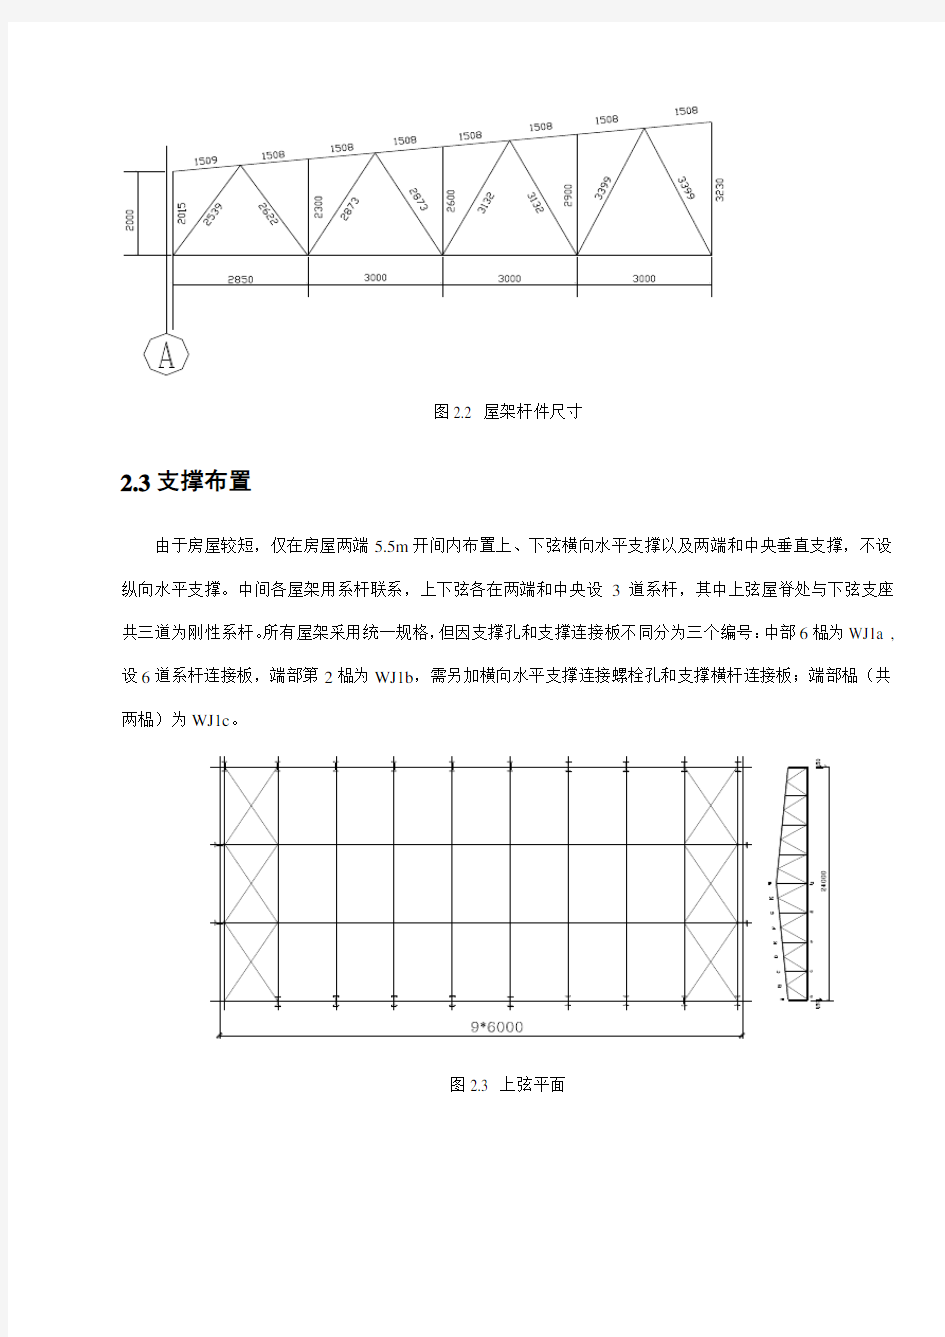 钢结构梯形屋架课程设计计算书绝对完整样本